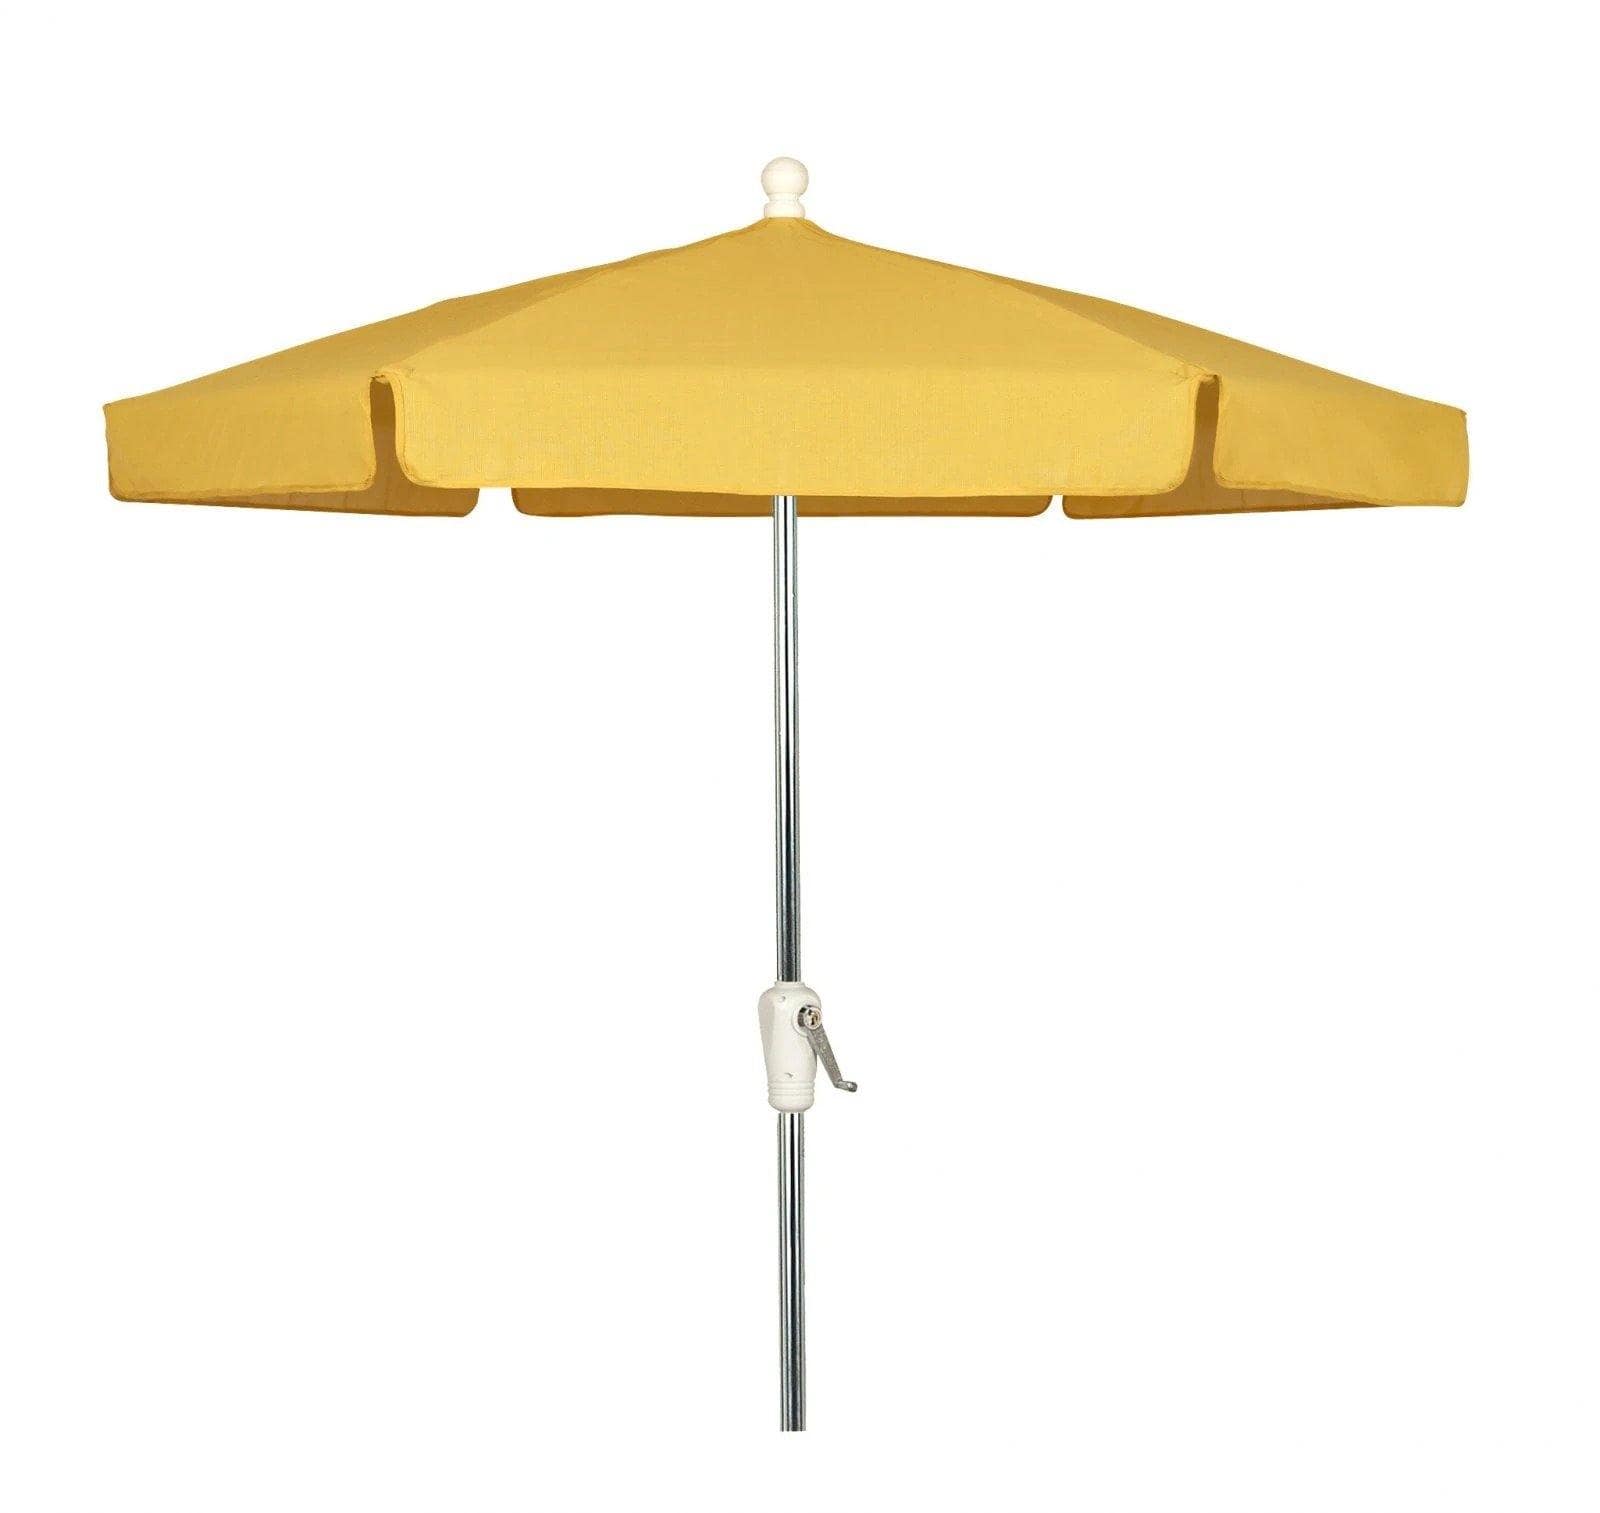 Fiberbuilt Table Umbrellas Yellow Fiberbuilt 7.5' Garden Umbrella w/ Crank Lift and Tilt